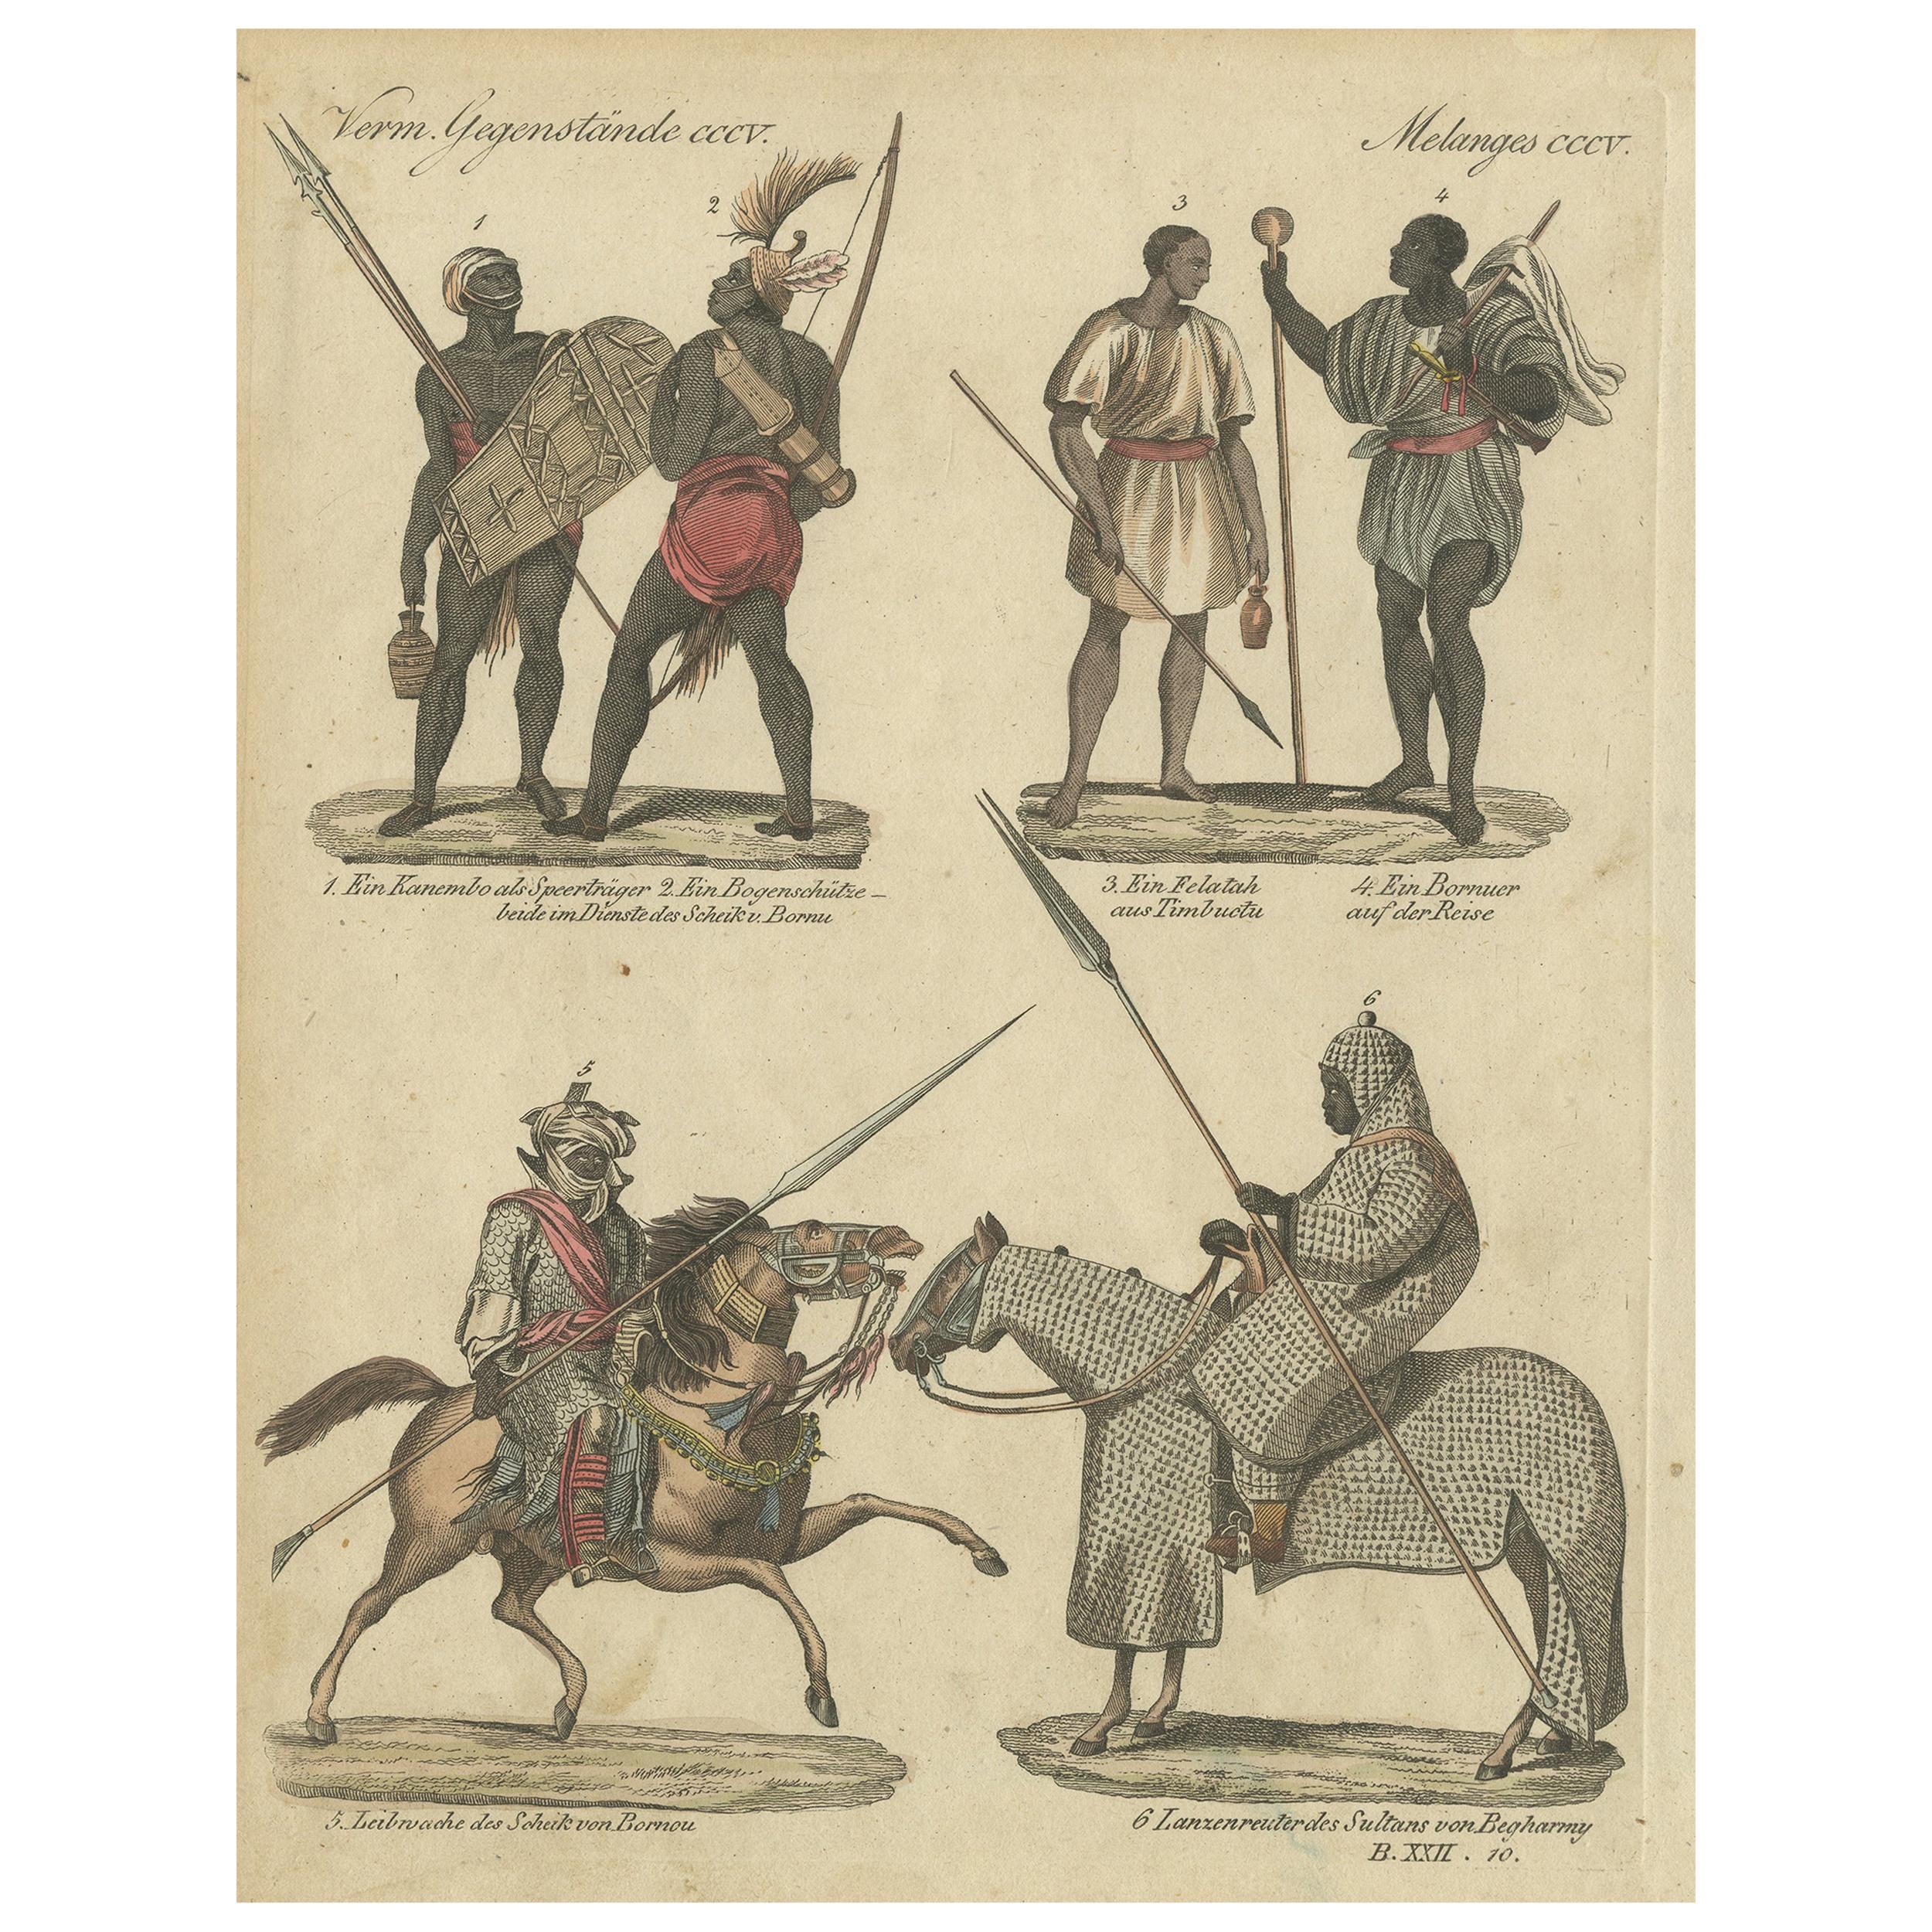 Impression ancienne de costumes d'Afrique par Bertuch, datant d'environ 1800